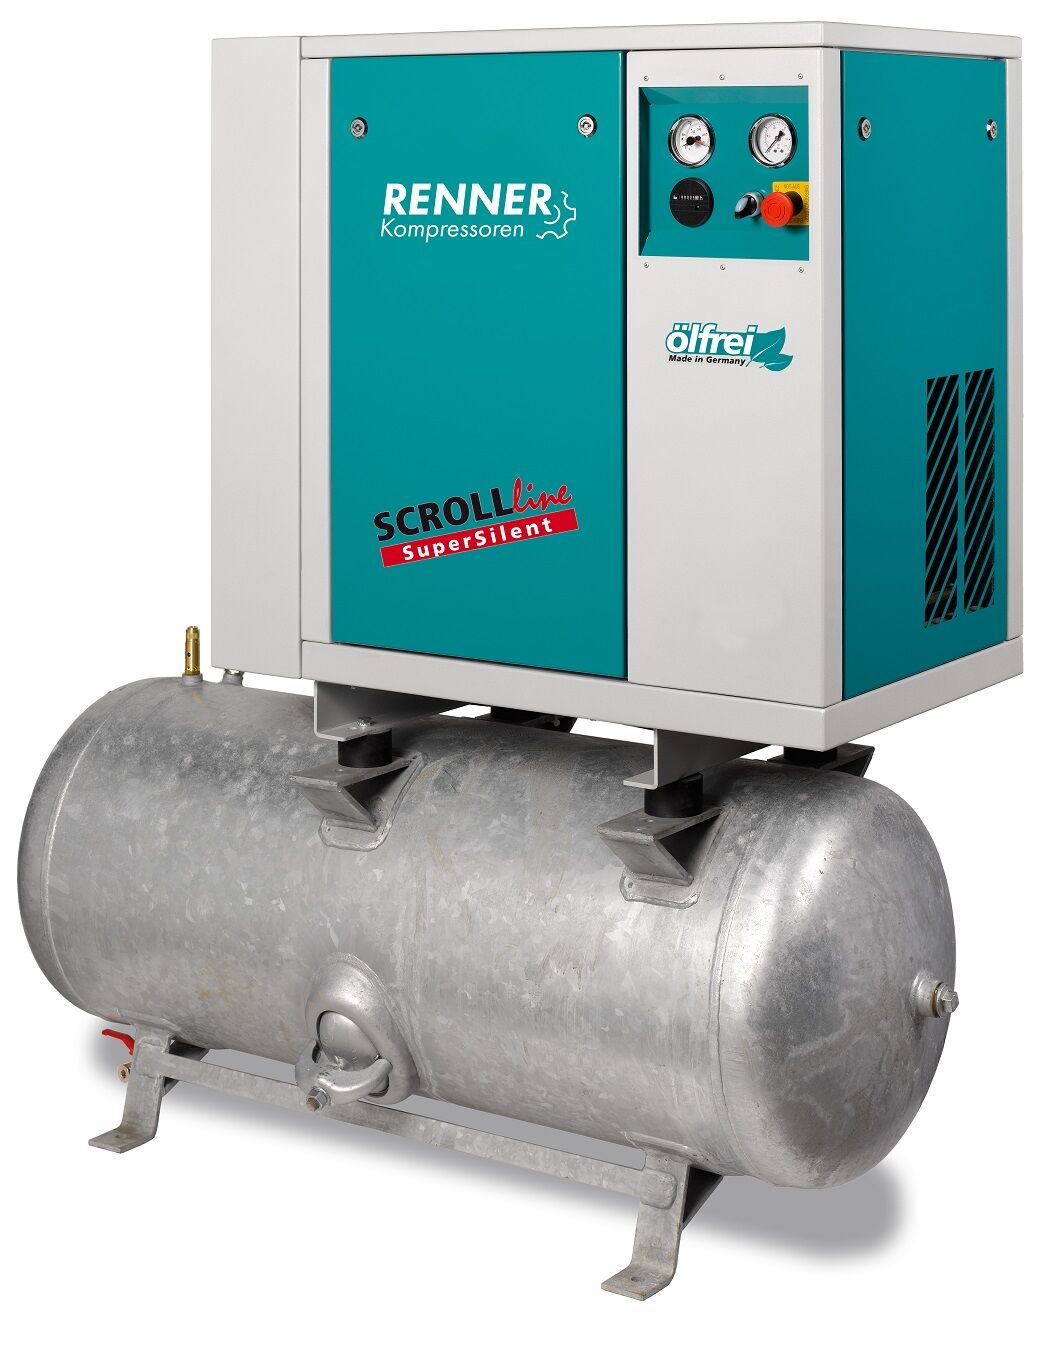 RENNER-Kompressor SLD-S 1,5 auf 250 Liter Druckbehälter - SuperSilent ölfreier Scrollkompressor